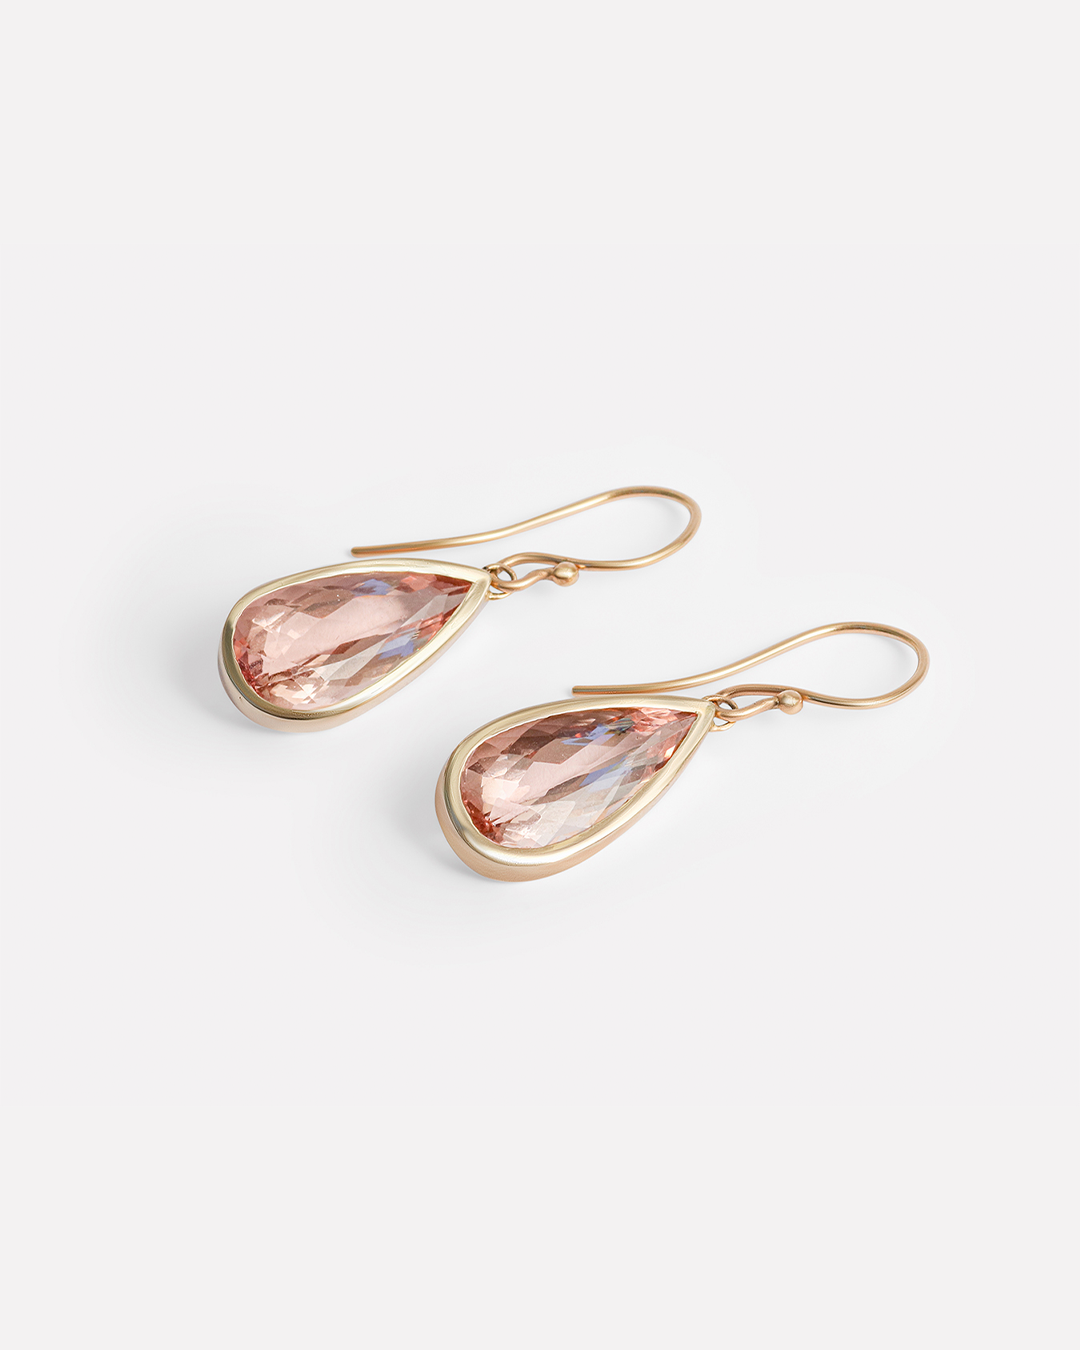 Pear / Morganite Drop Earrings By fitzgerald jewelry